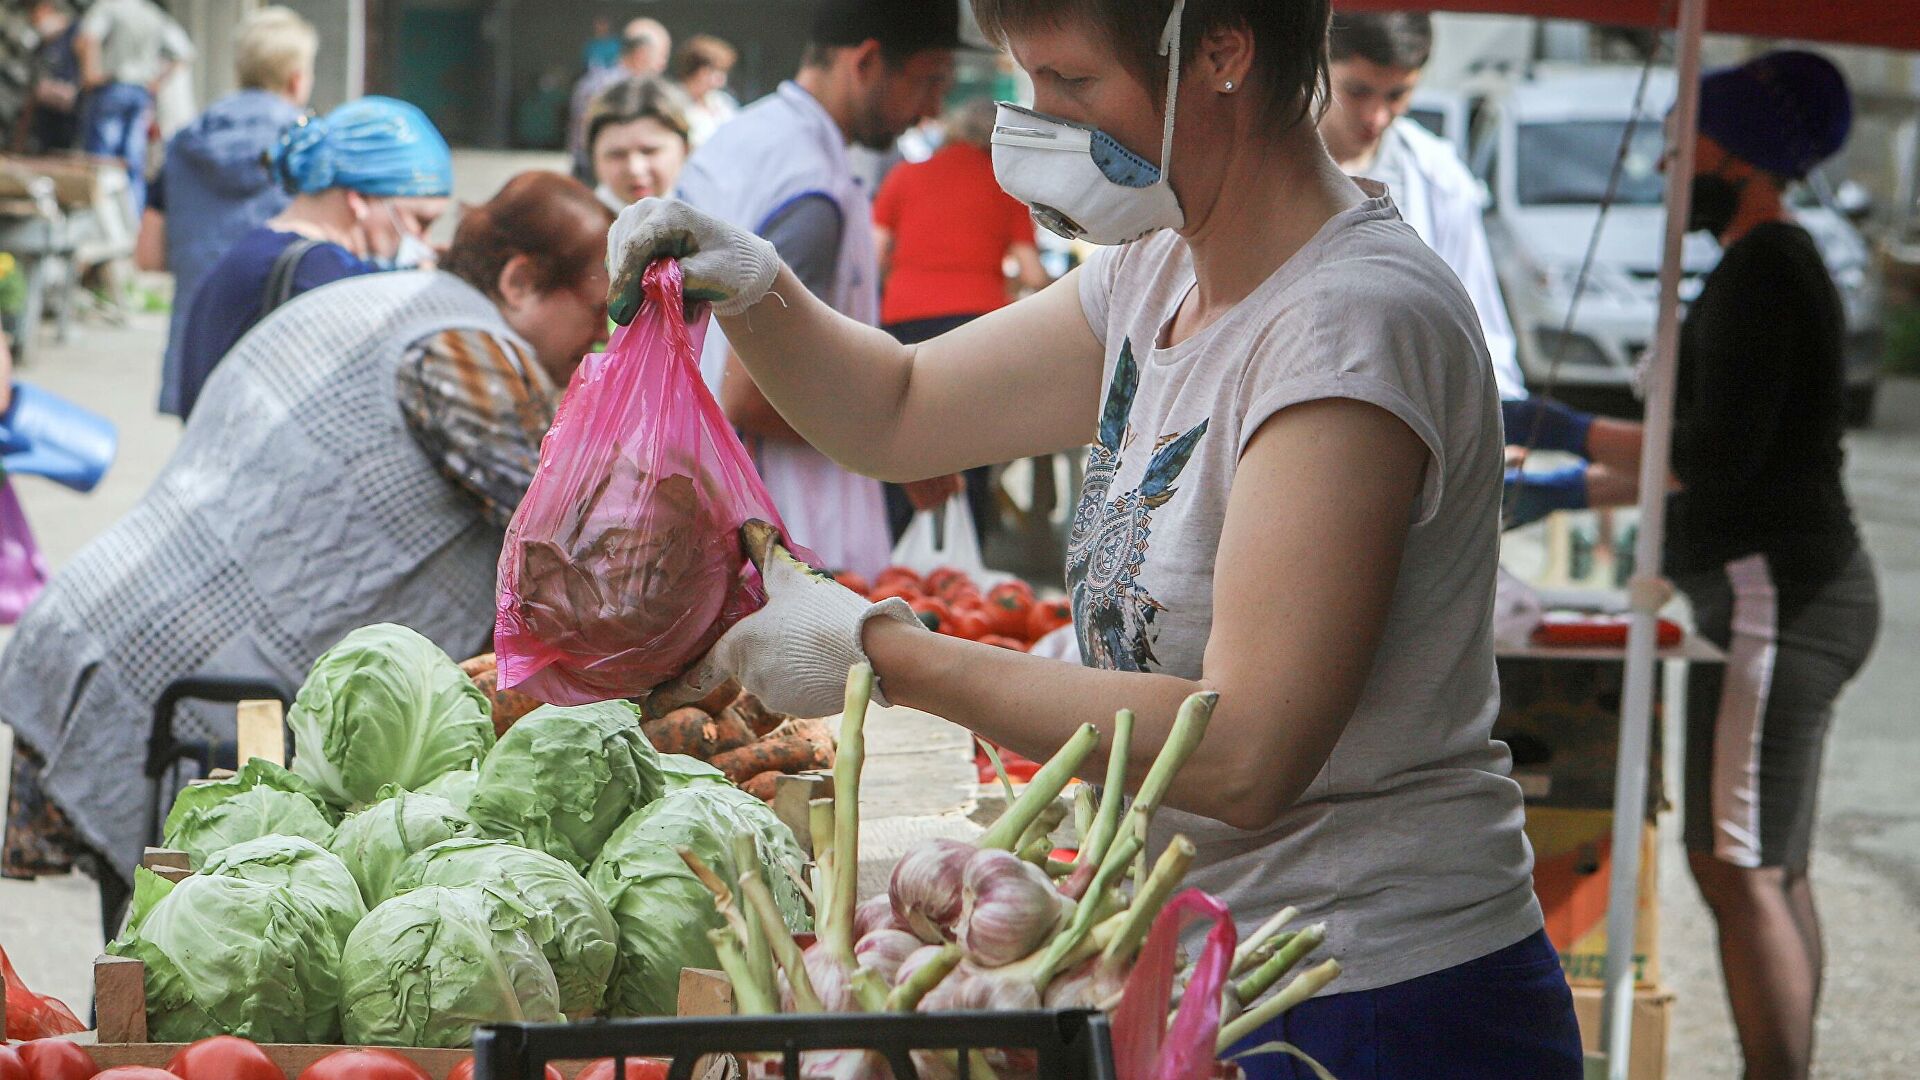 Рынок свежих овощей. Ярмарка выходного дня в Зюзино. Когда подешевеют овощи. В России подешевели огурцы. Ярмарки выходного дня возобновят работу в Москве 1 апреля.